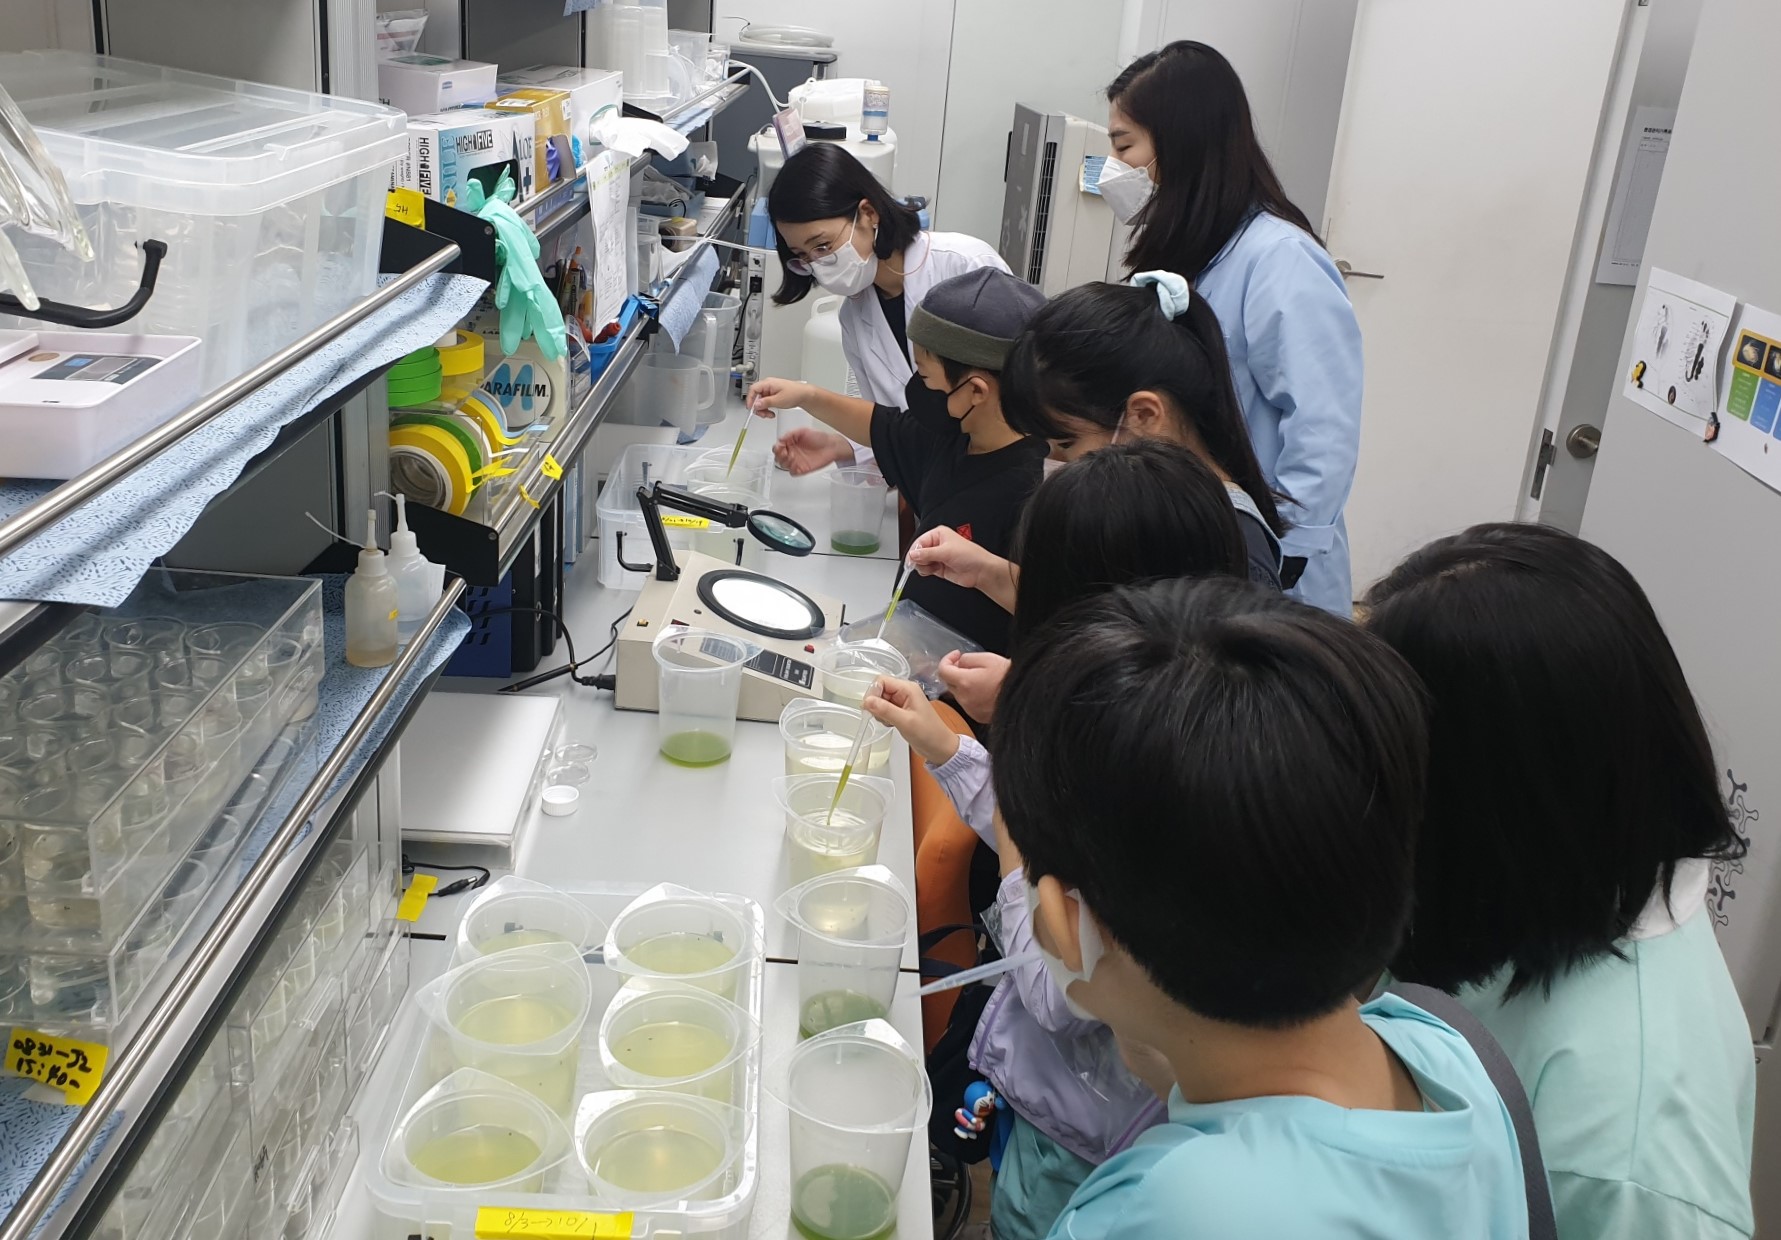 지난 9월 2일 한강유역환경청에서 열린 환경 꿈나무 육성을 위한 실험실 참여 교육 프로그램에서 나룰초등학교 학생들이 물벼룩 먹이주기 체험을 하고 있다.